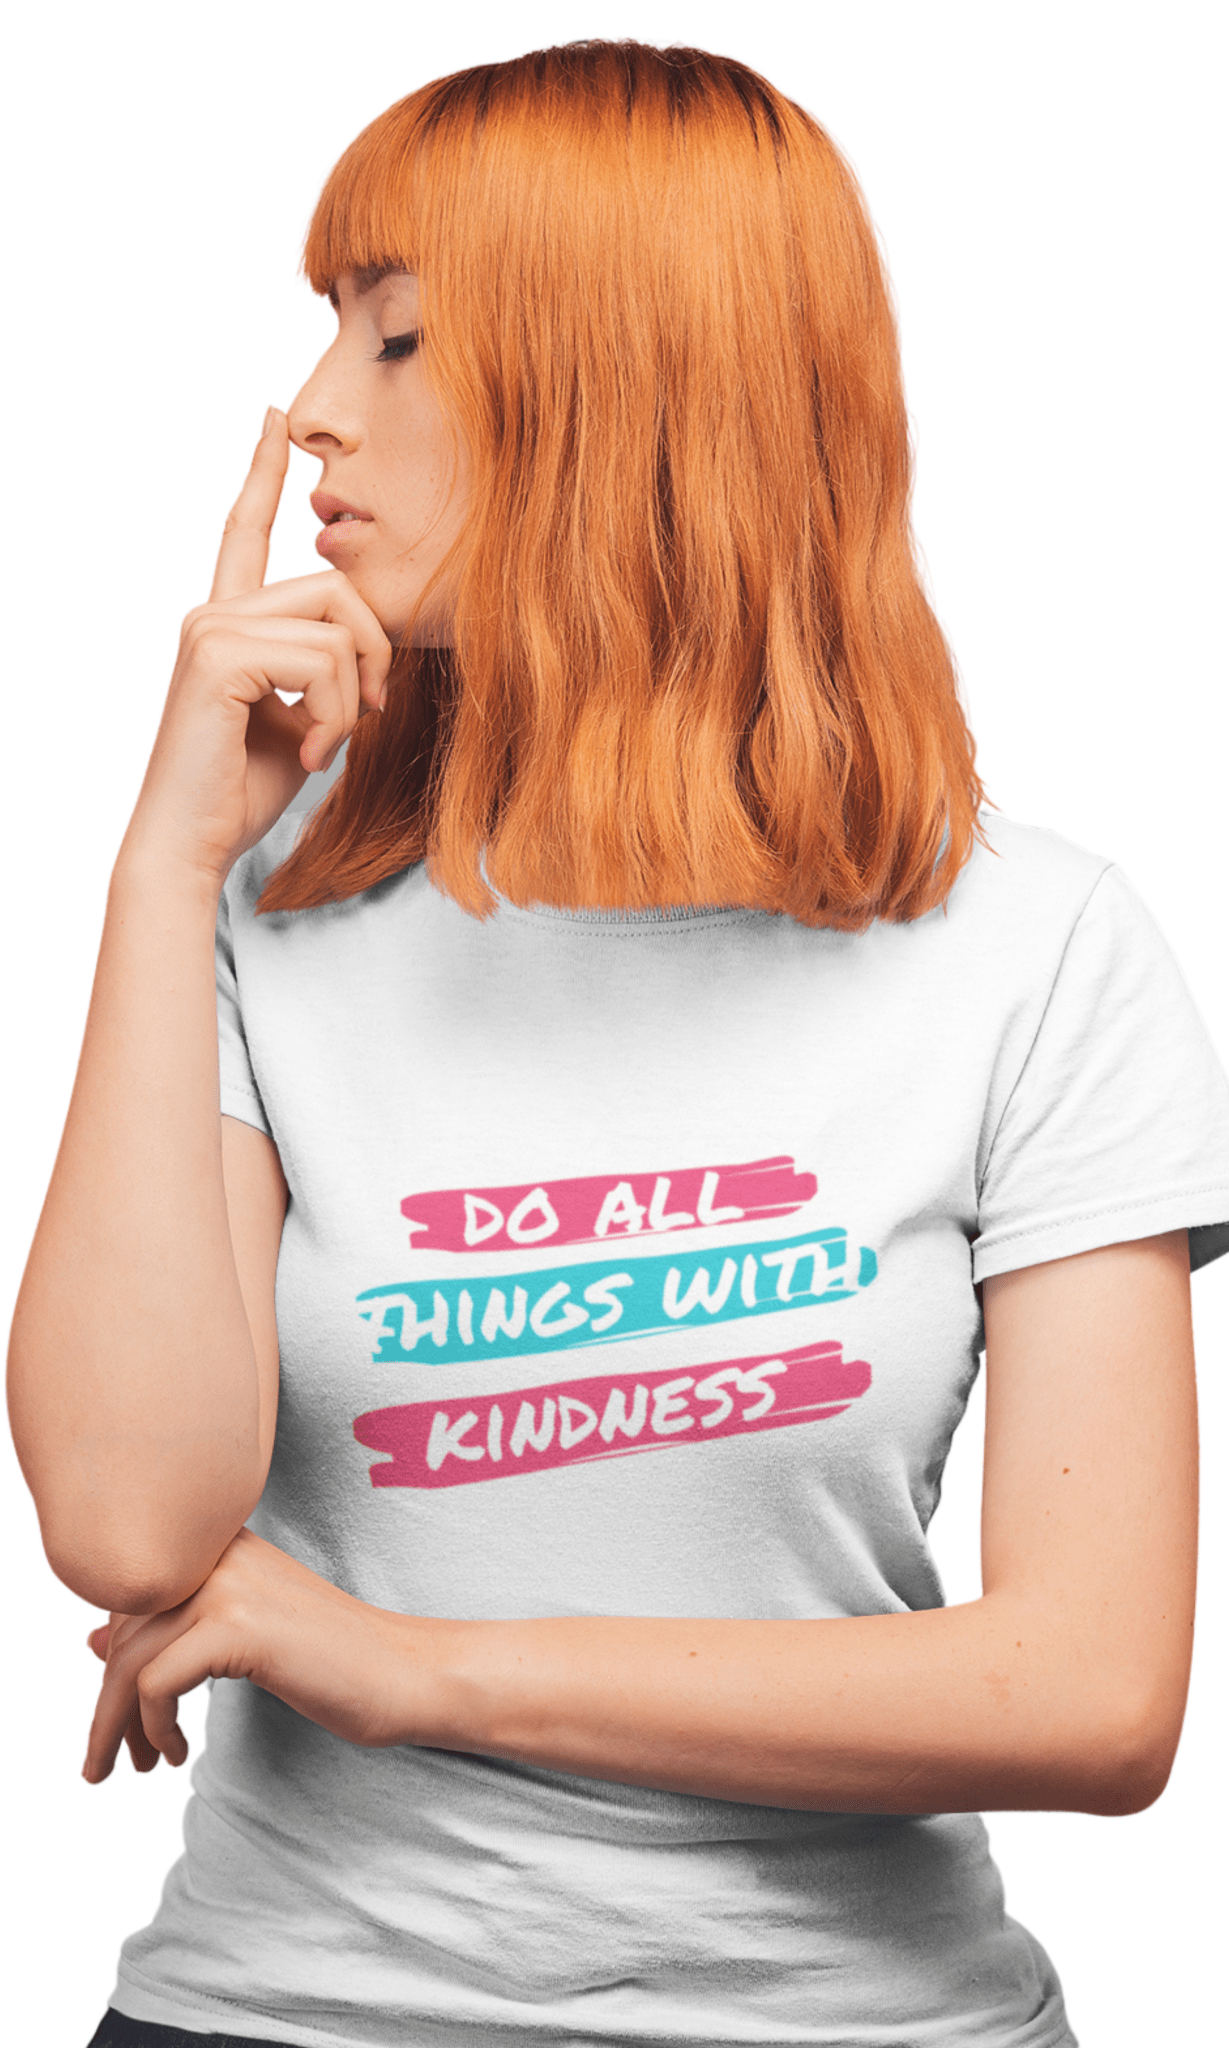 Kindness Regular Women's T-Shirt - Hush and Wear